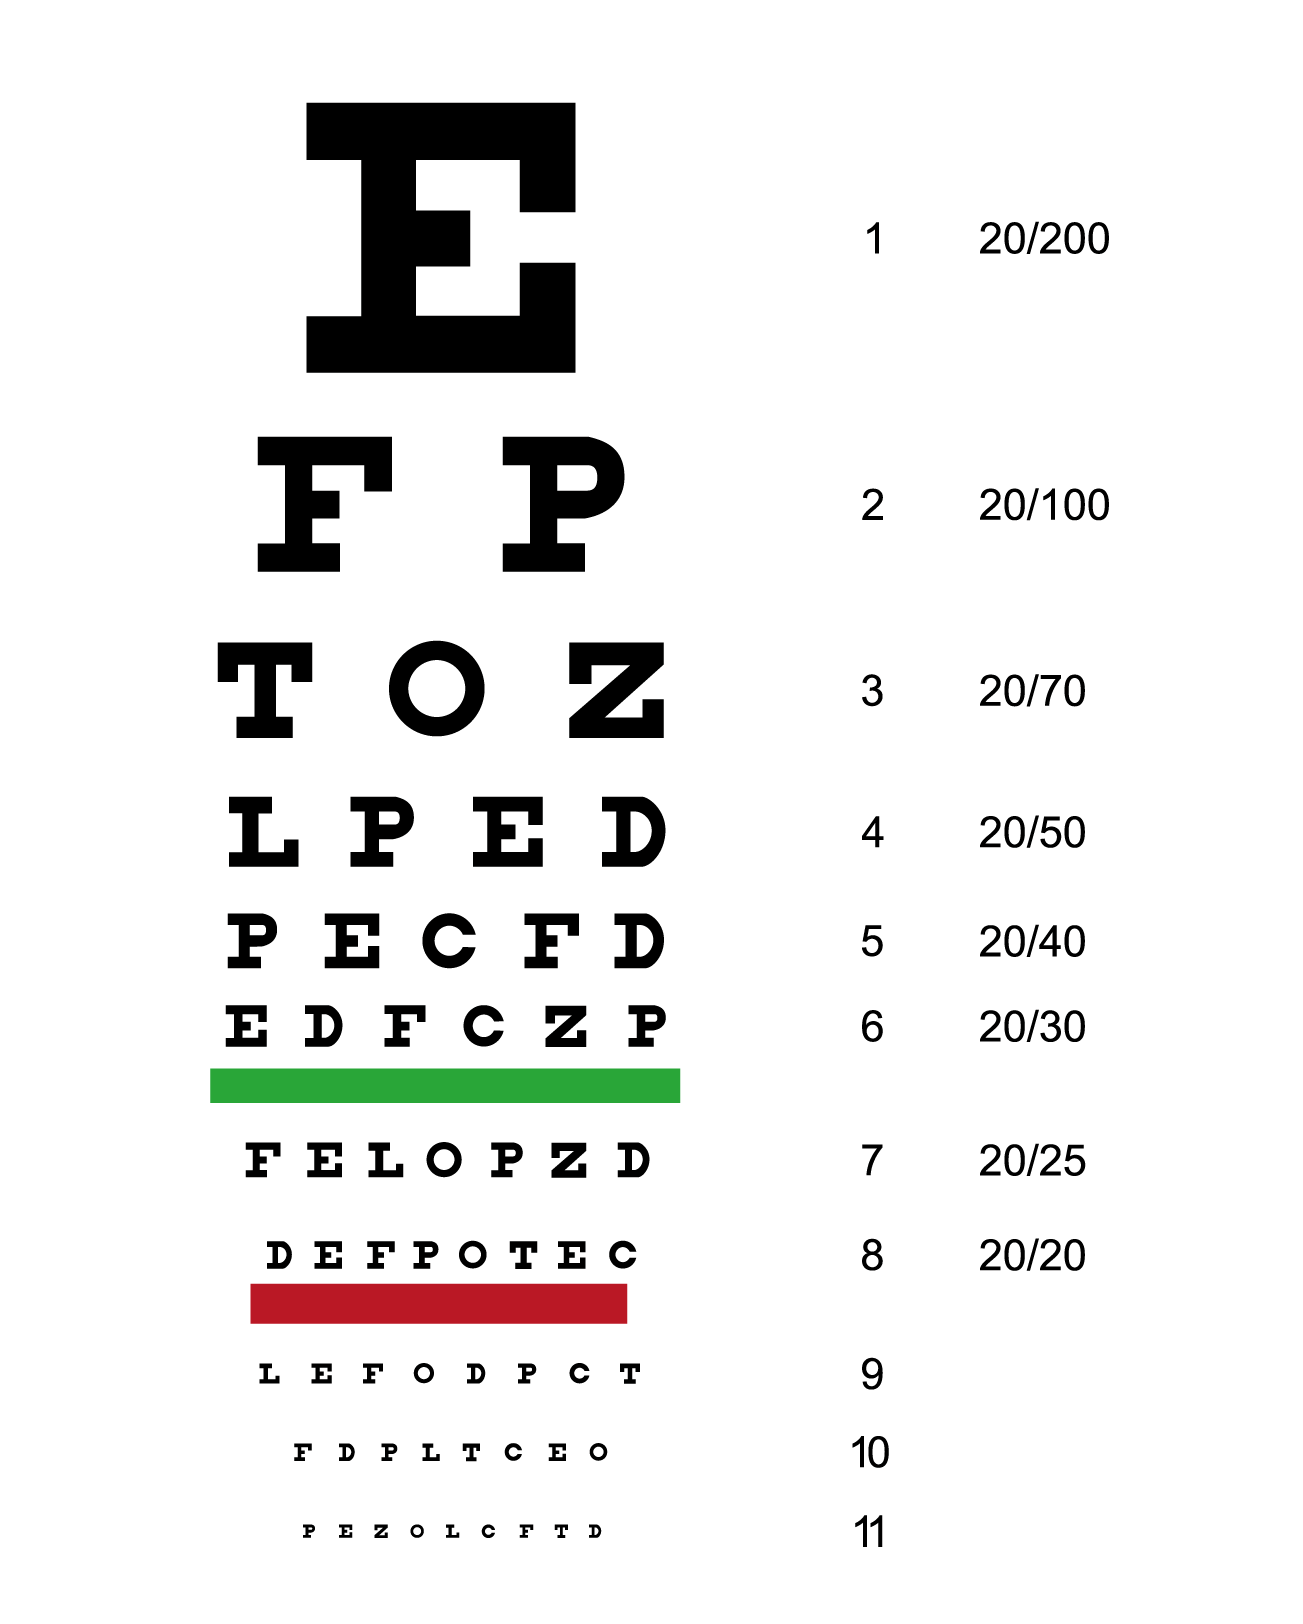 [真相]从小看到大的视力表,为什么用E这个符